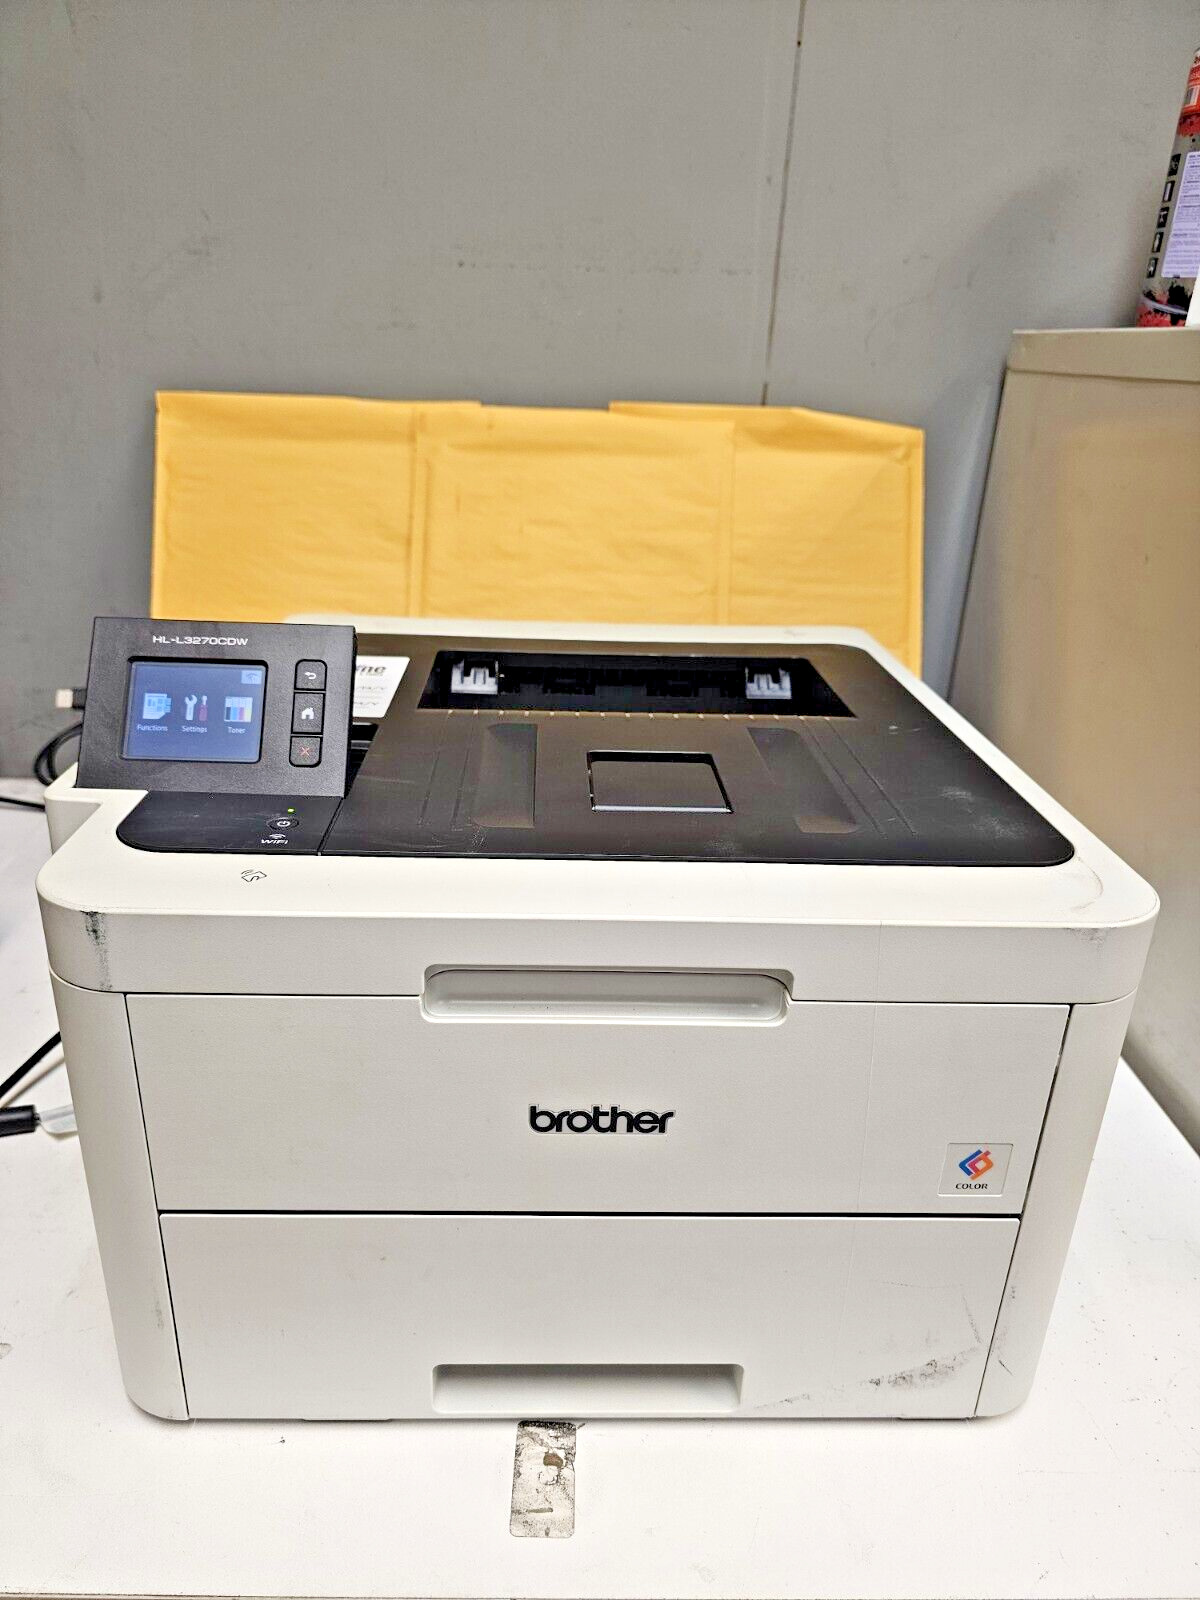 Brother HL-L3270CDW Digital Color Laser Printer